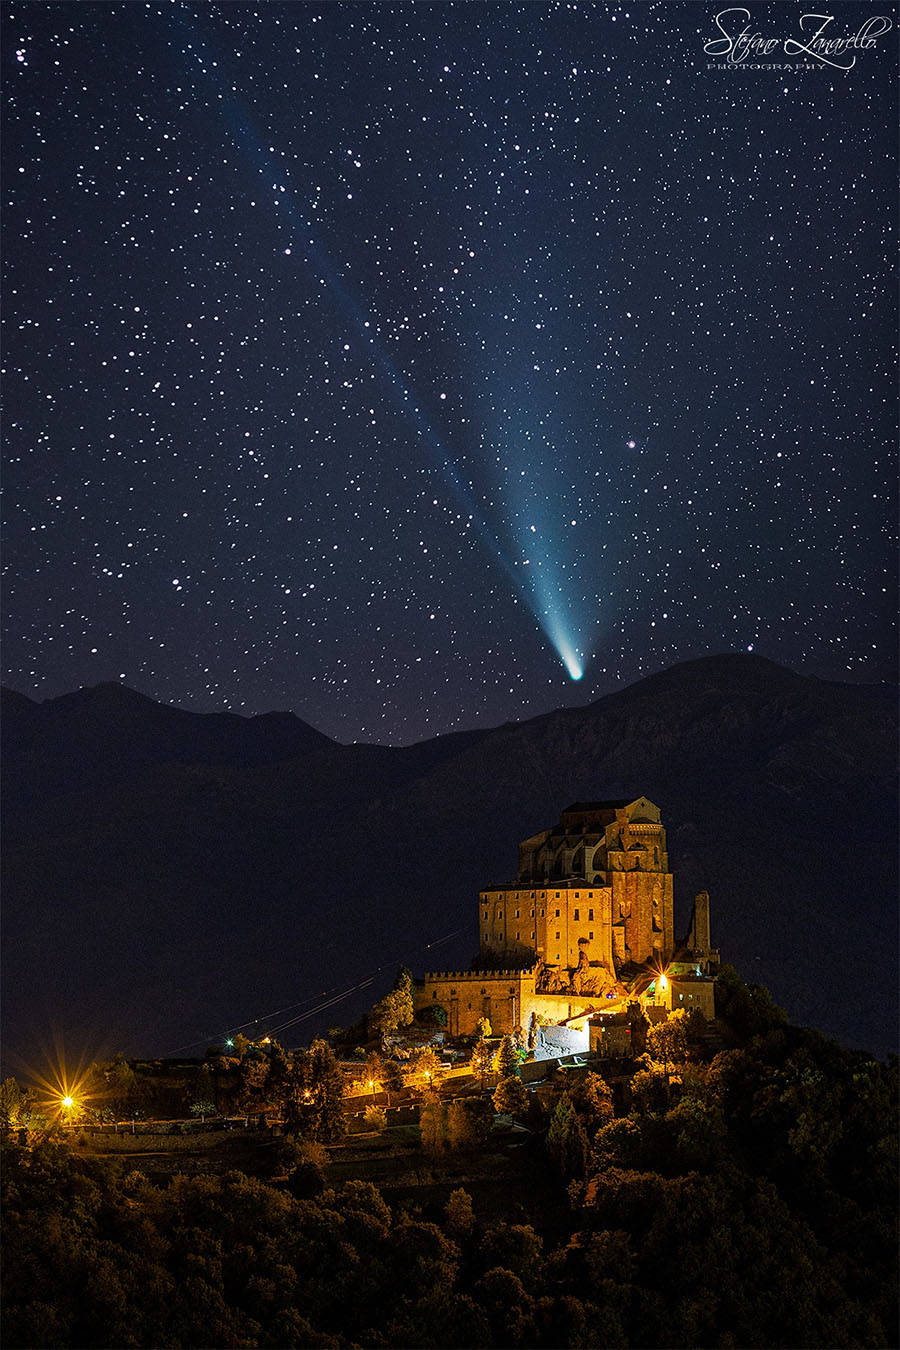 Come un presepe... Nelle sue ultime apparizioni, prima di perdersi nelle profondità galattiche, la cometa Neowise si congiunge alla Sacra di San Michele